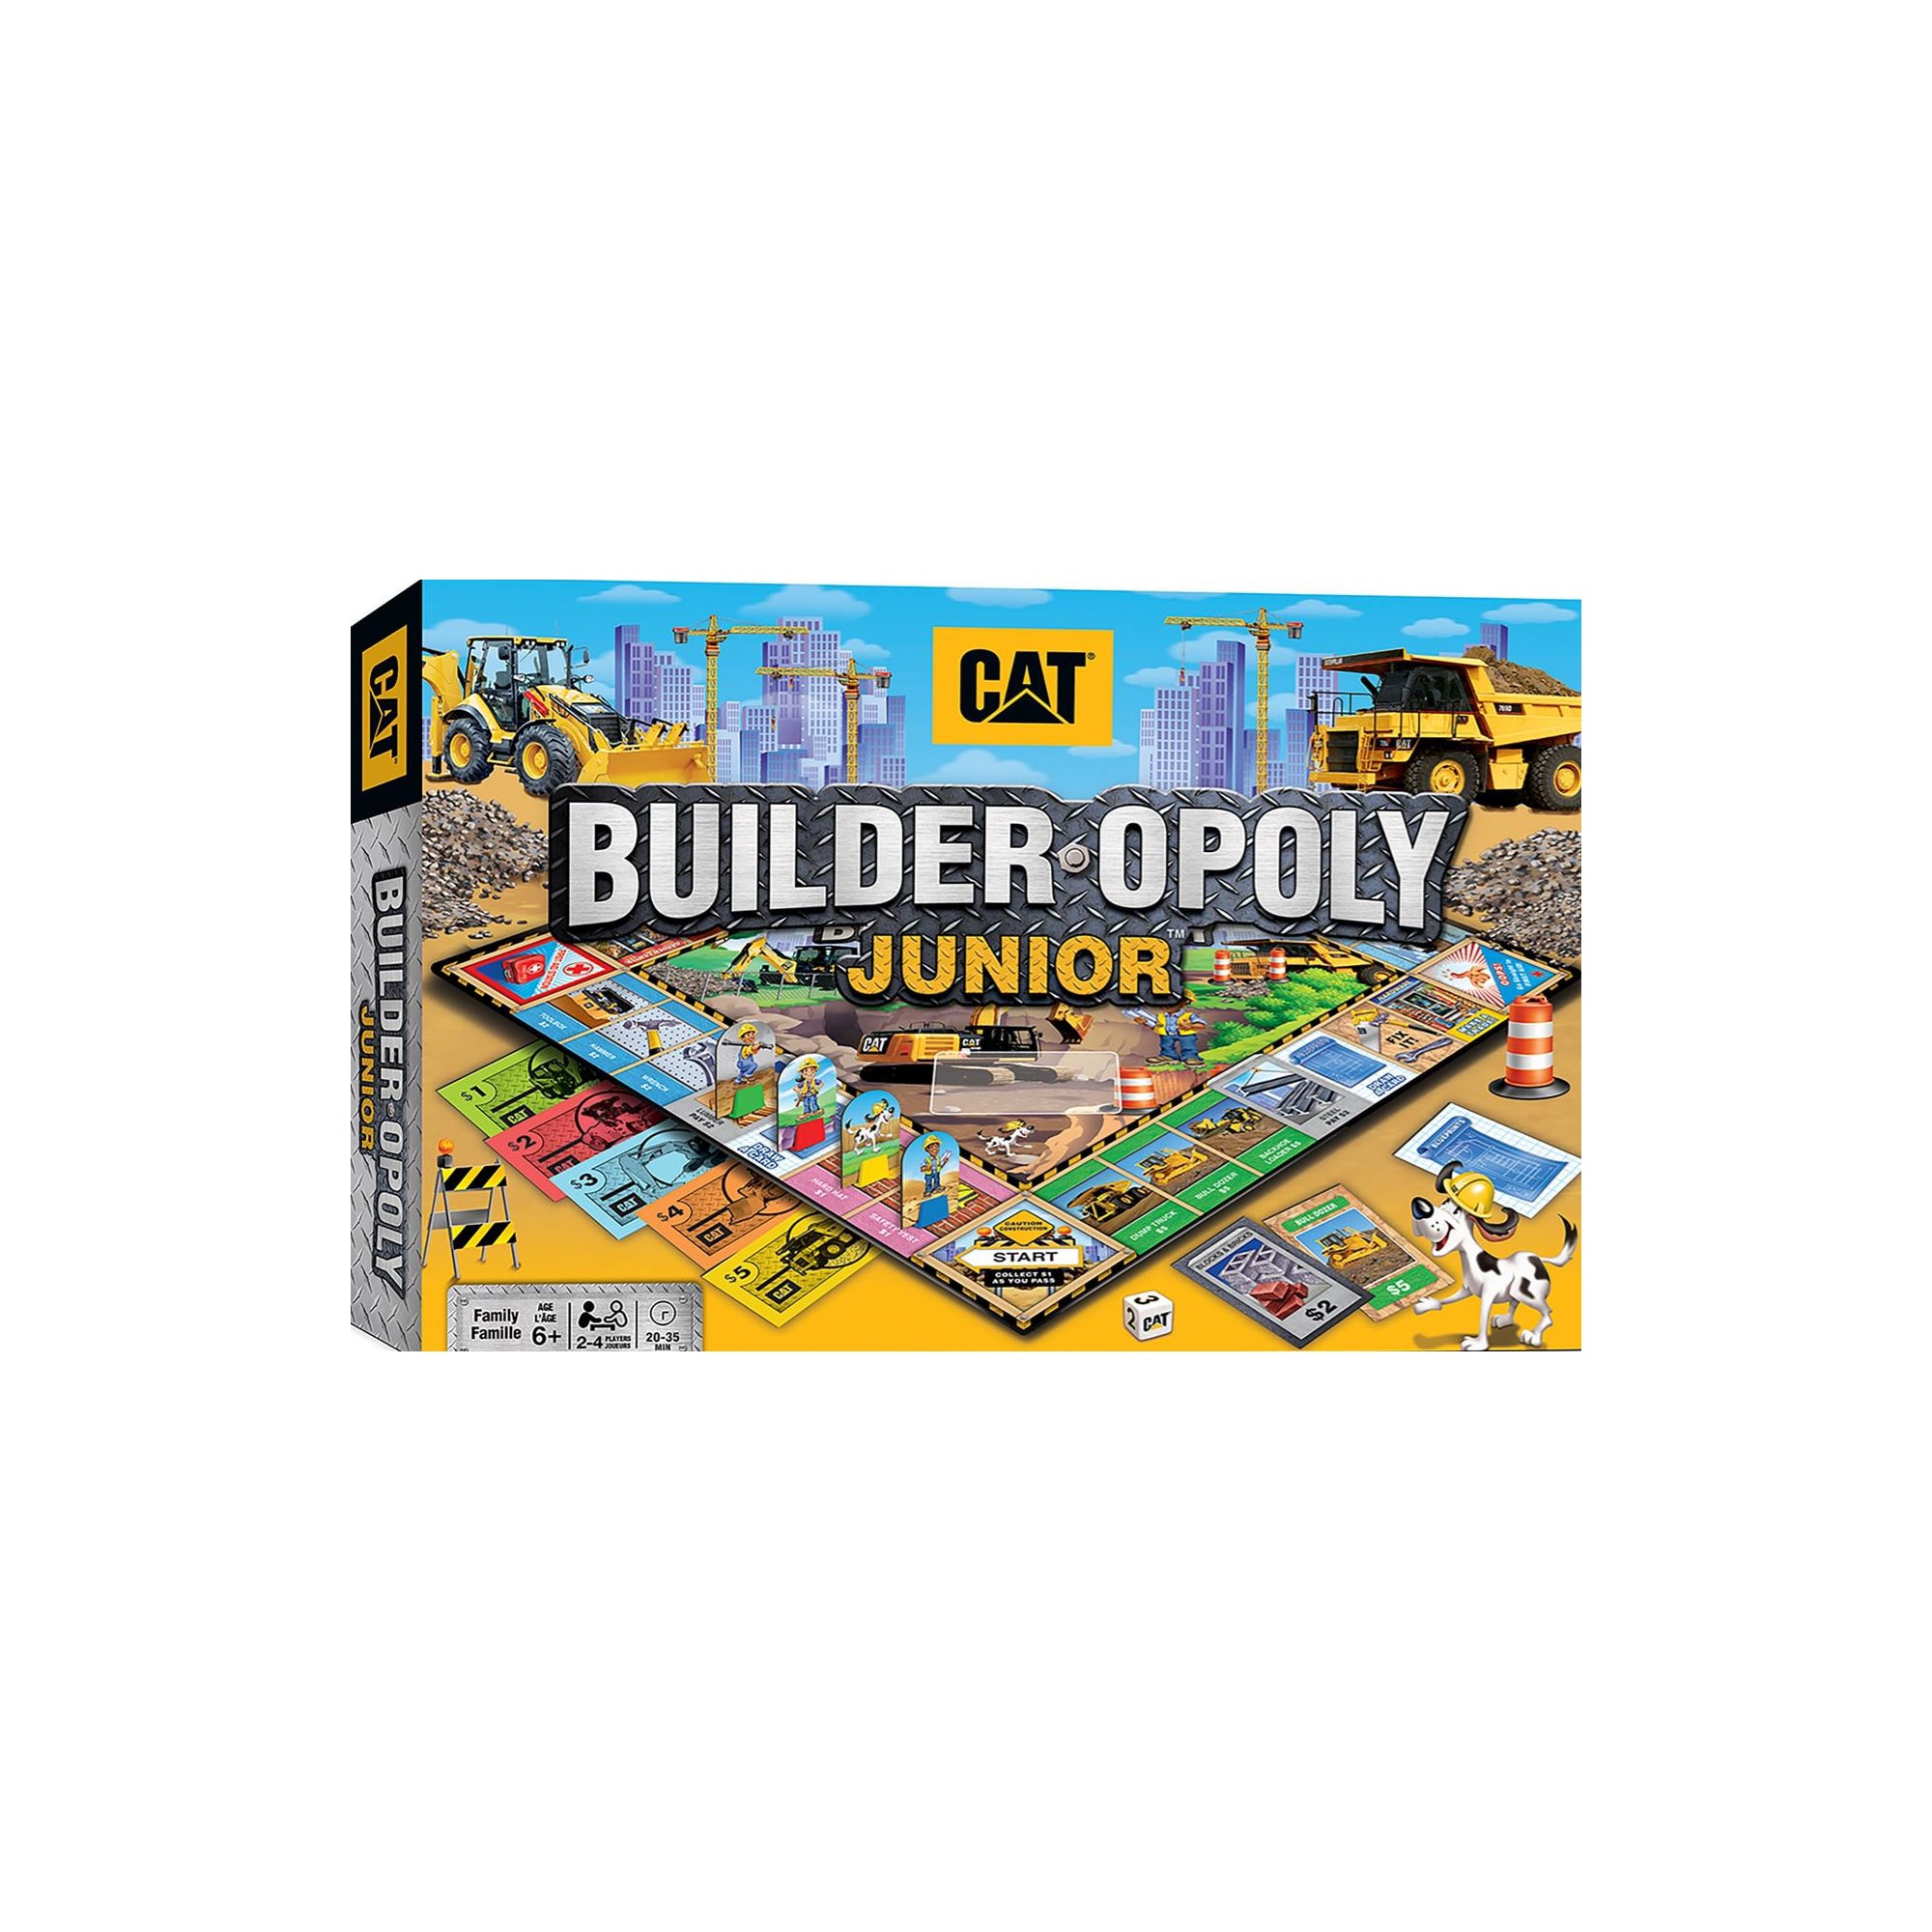 Cat Builder-Opoly Junior